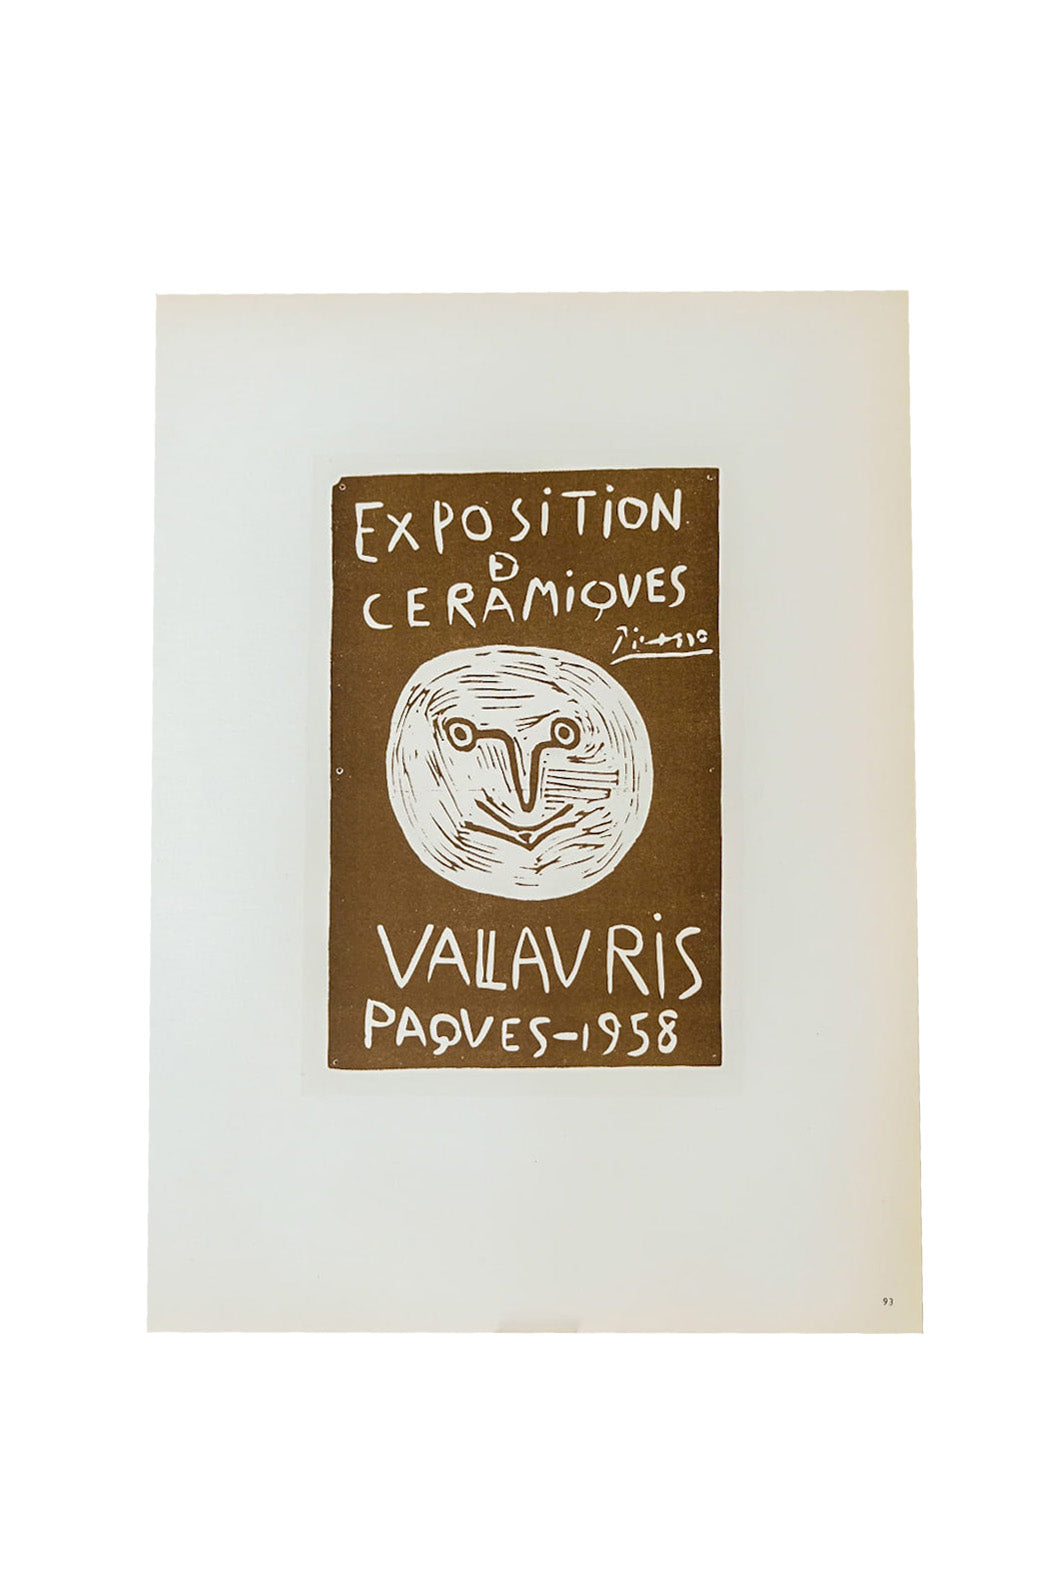 Pablo Picasso Exposition De Ceramiques Vallauris Page 93